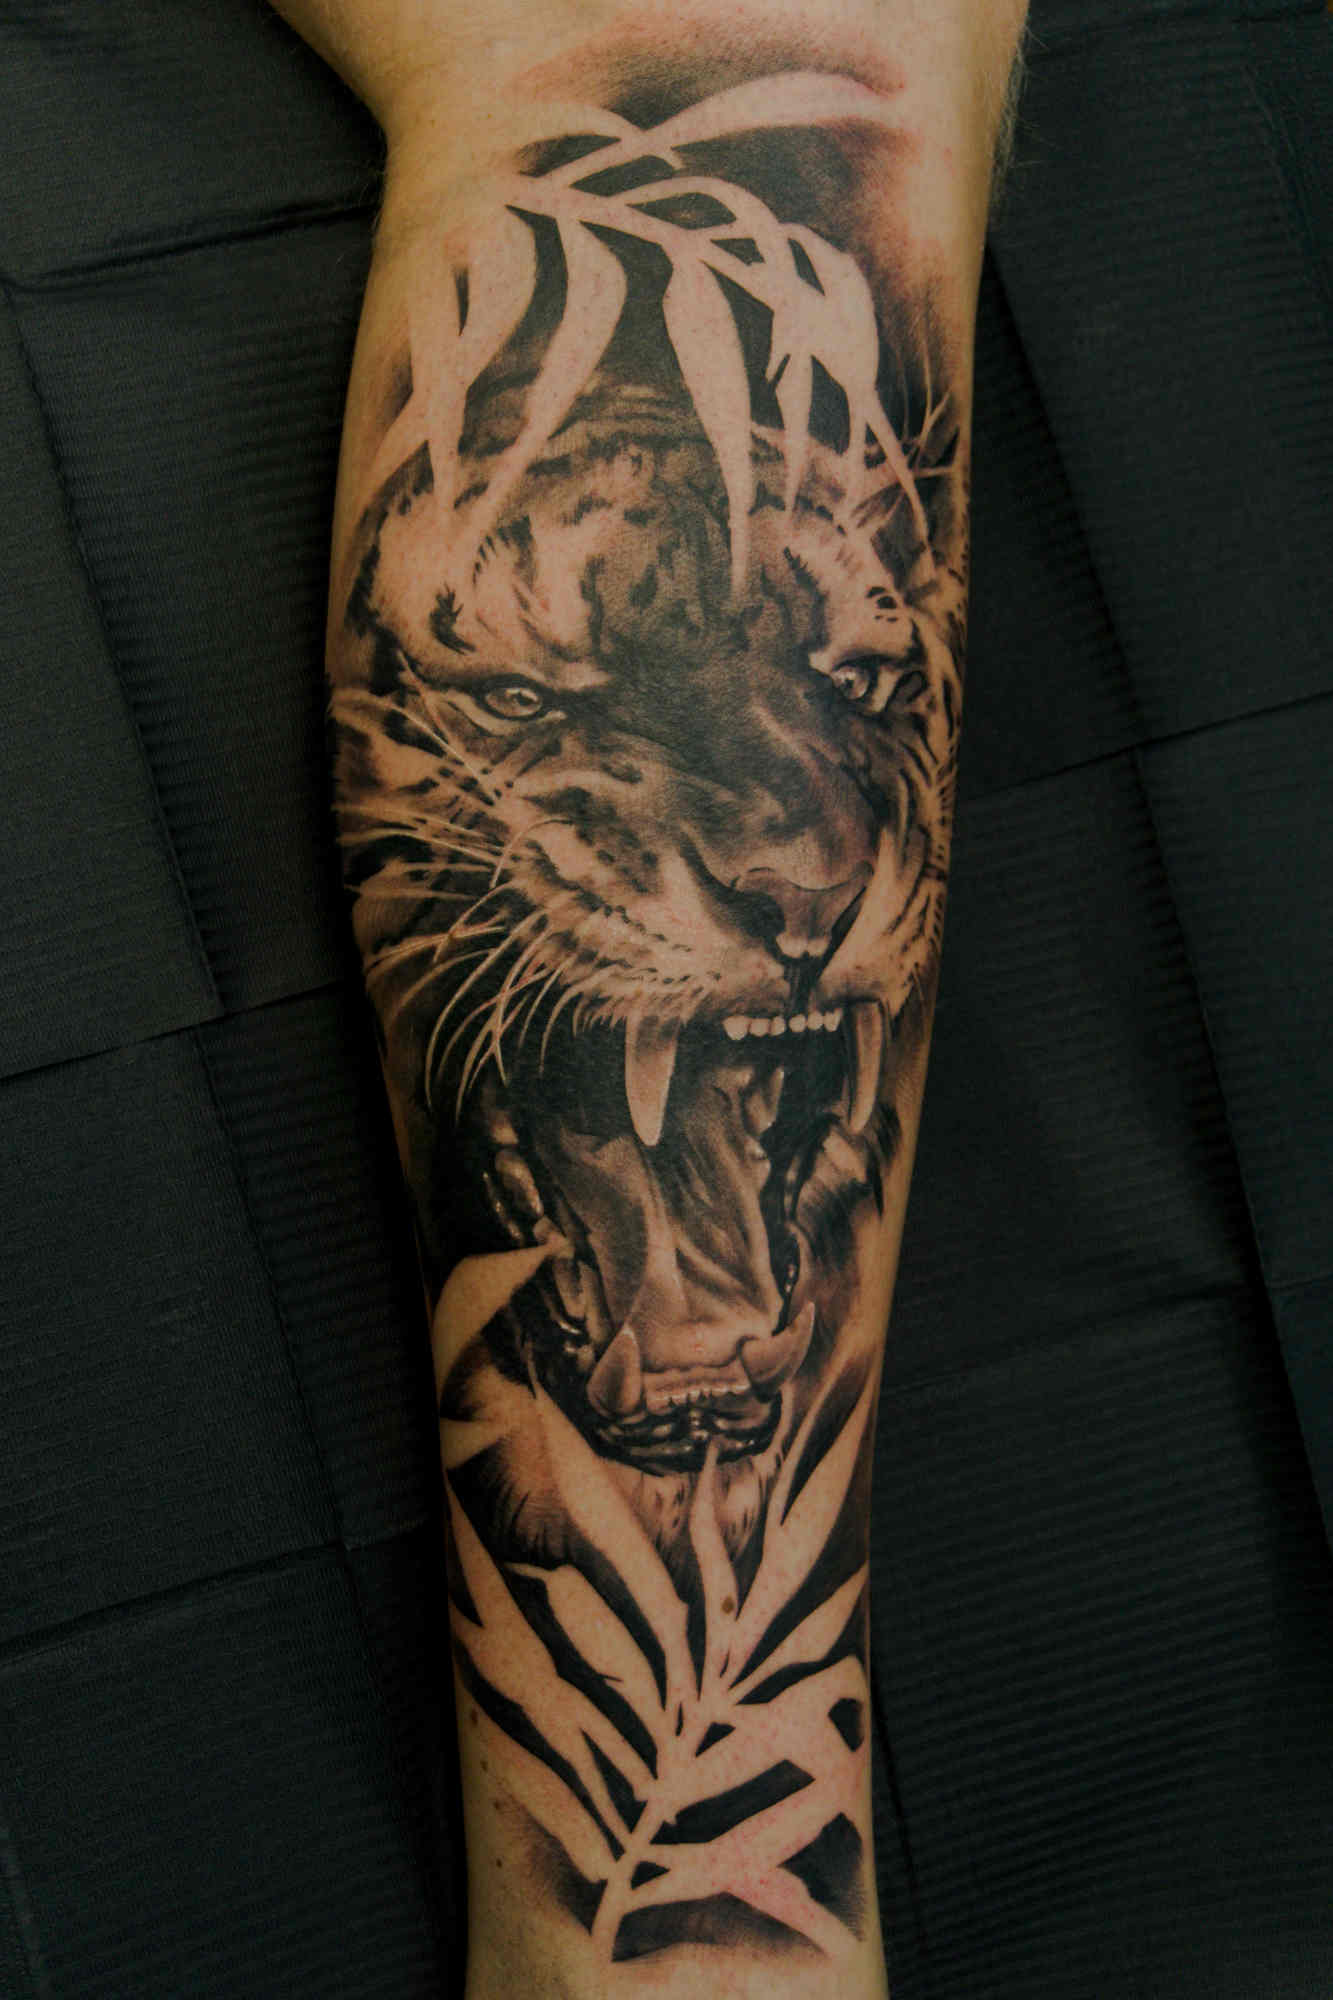 Chybs tijger tattoo op been